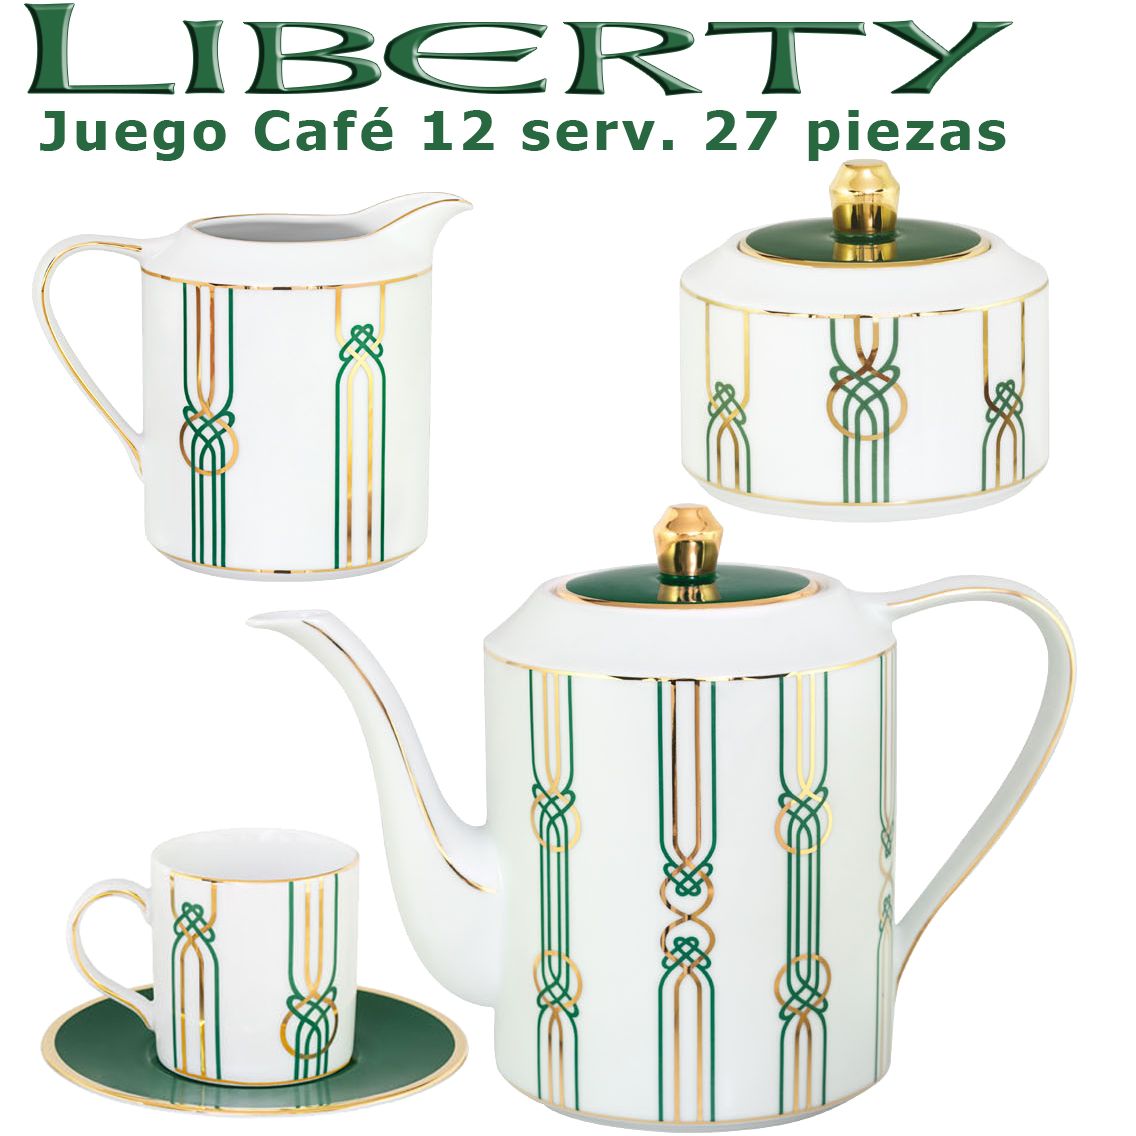 Vajilla con Juego de Café Porcel 84 piezas Liberty Verde y Oro